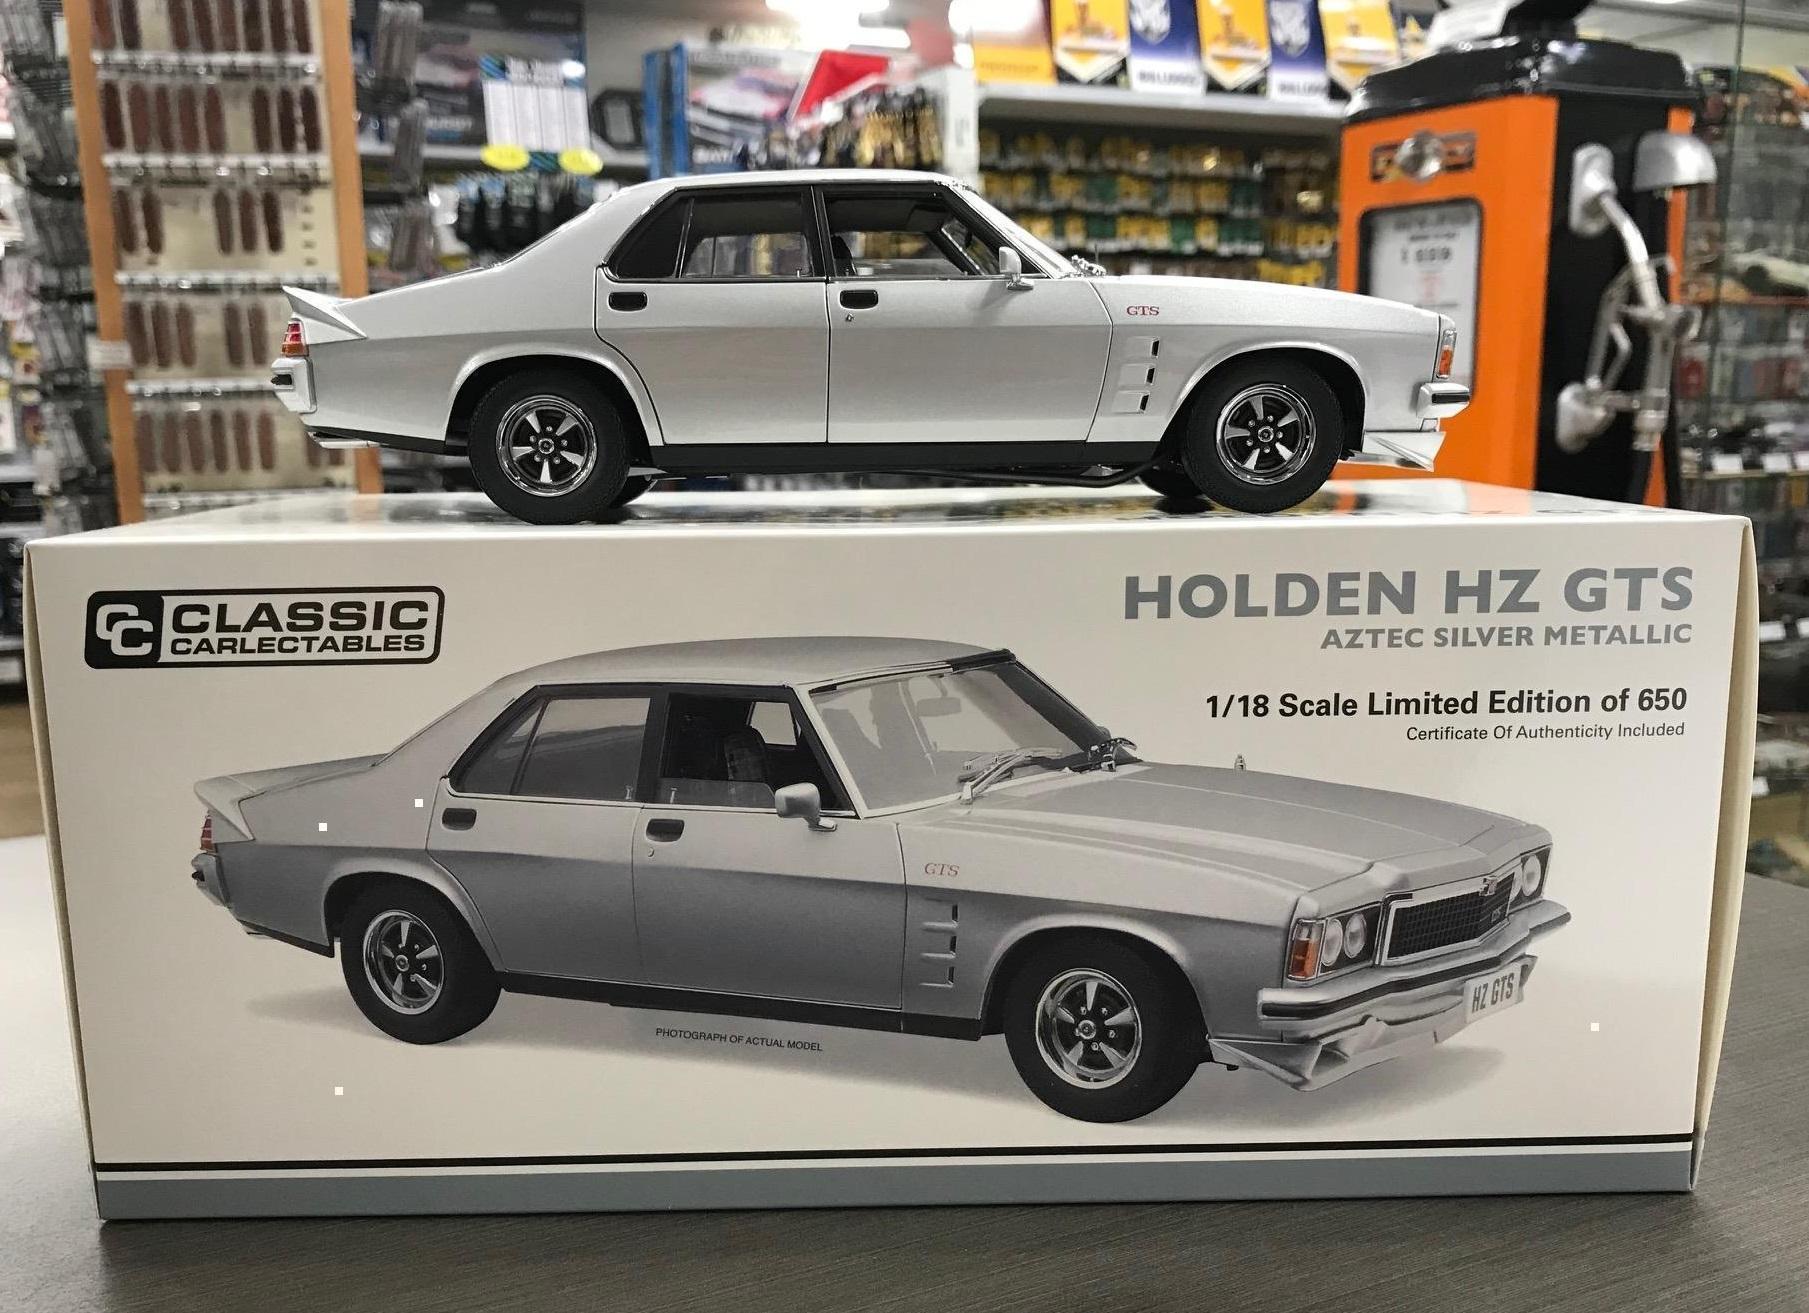 Holden HZ GTS Aztec Silver Metallic